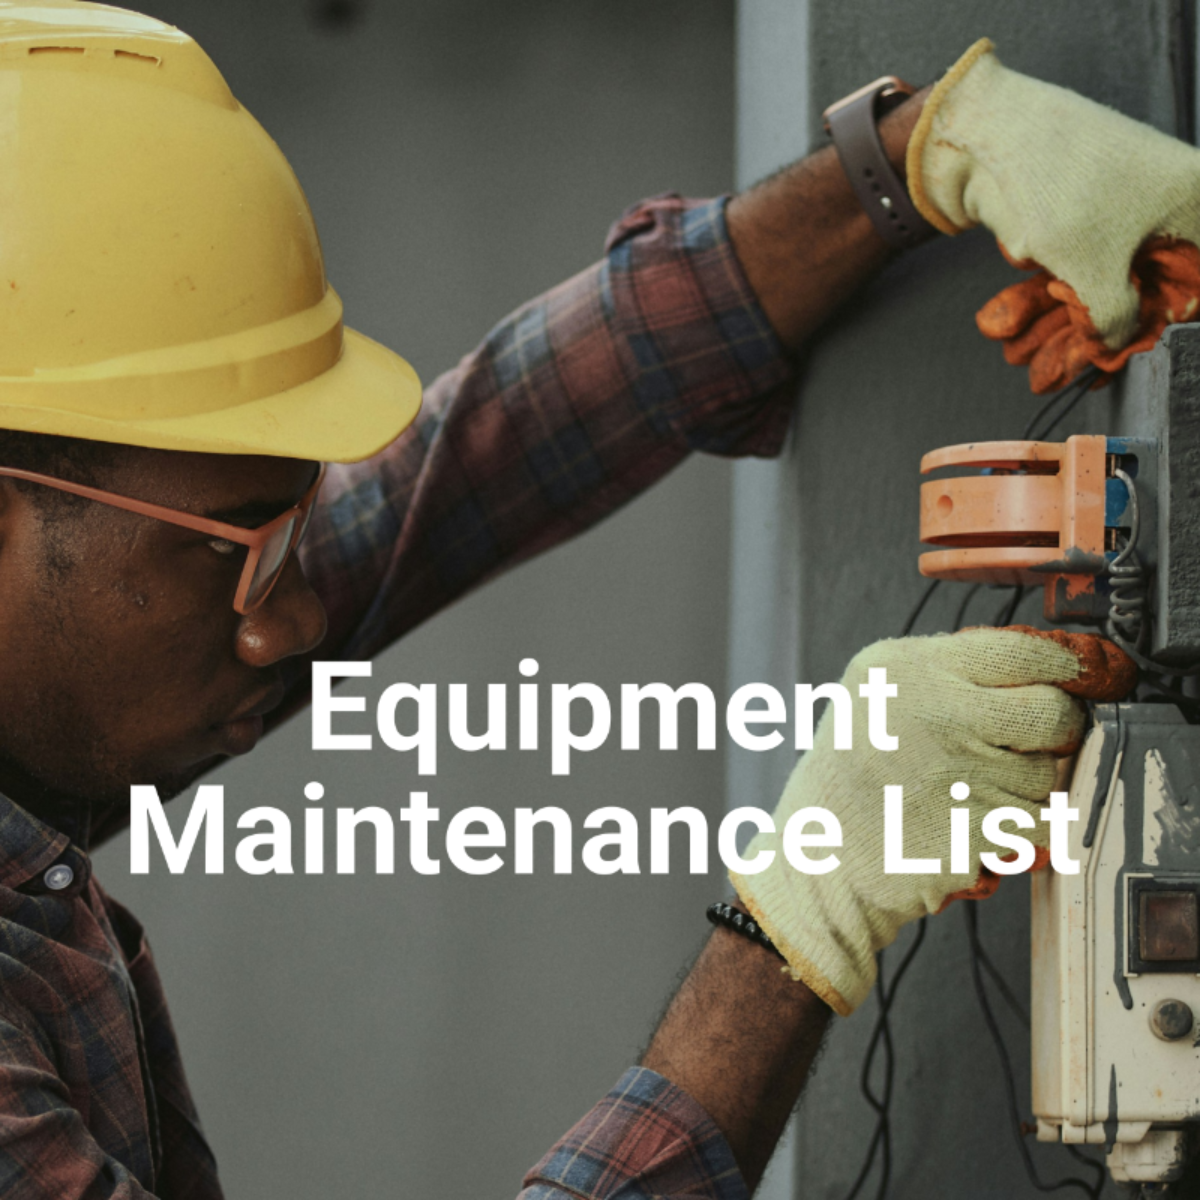 Equipment Maintenance List Template